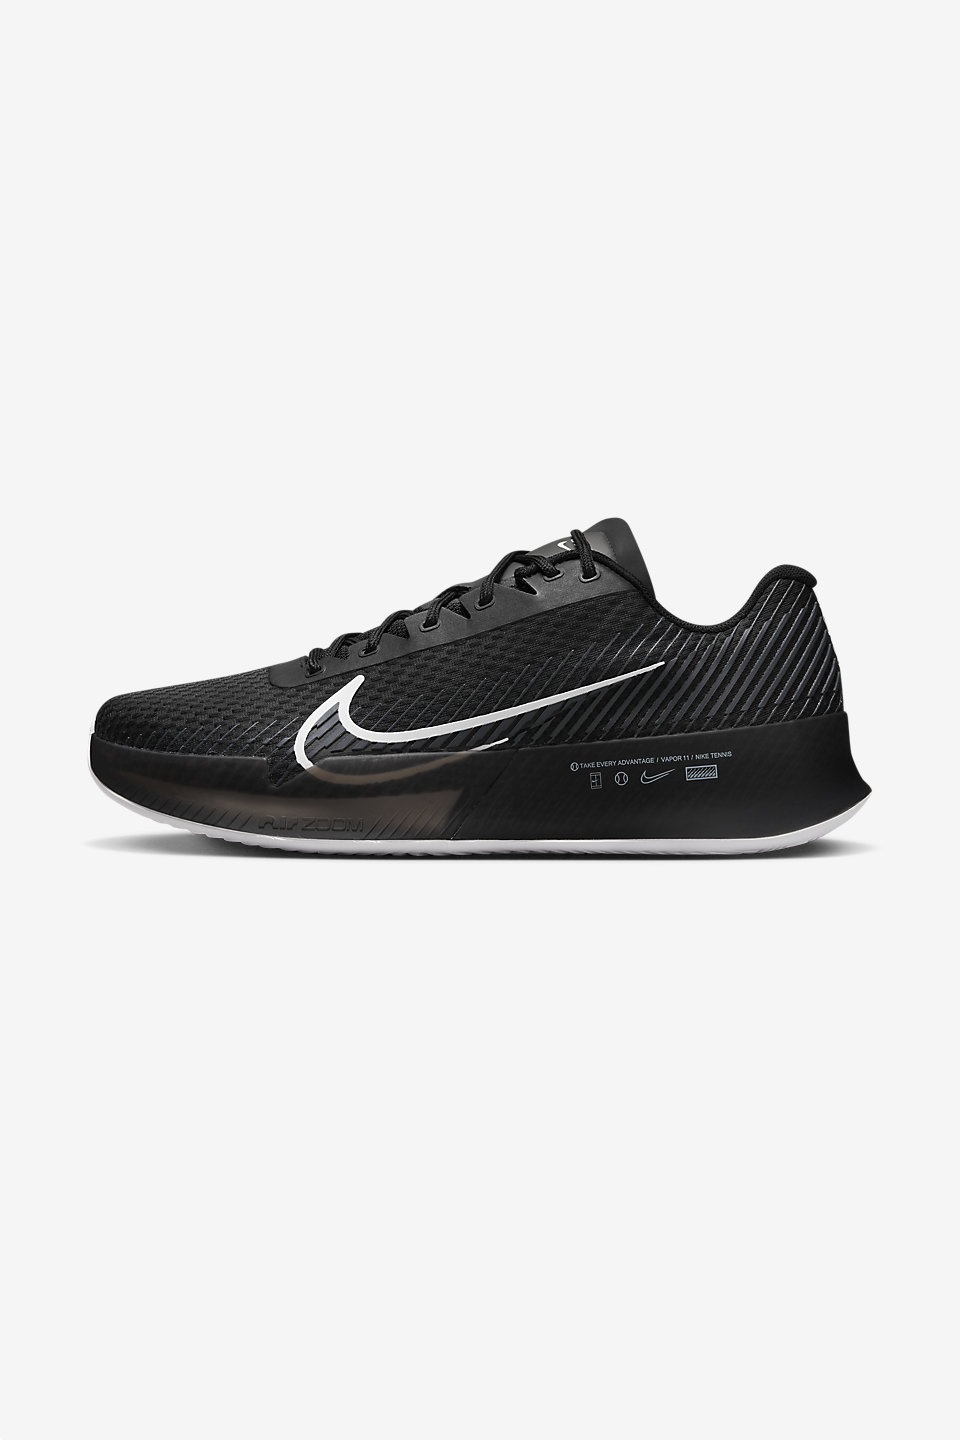 NIKE - NikeCourt Air Zoom Vapor 11 Erkek Toprak Kort (Clay) Tenis Ayakkabısı